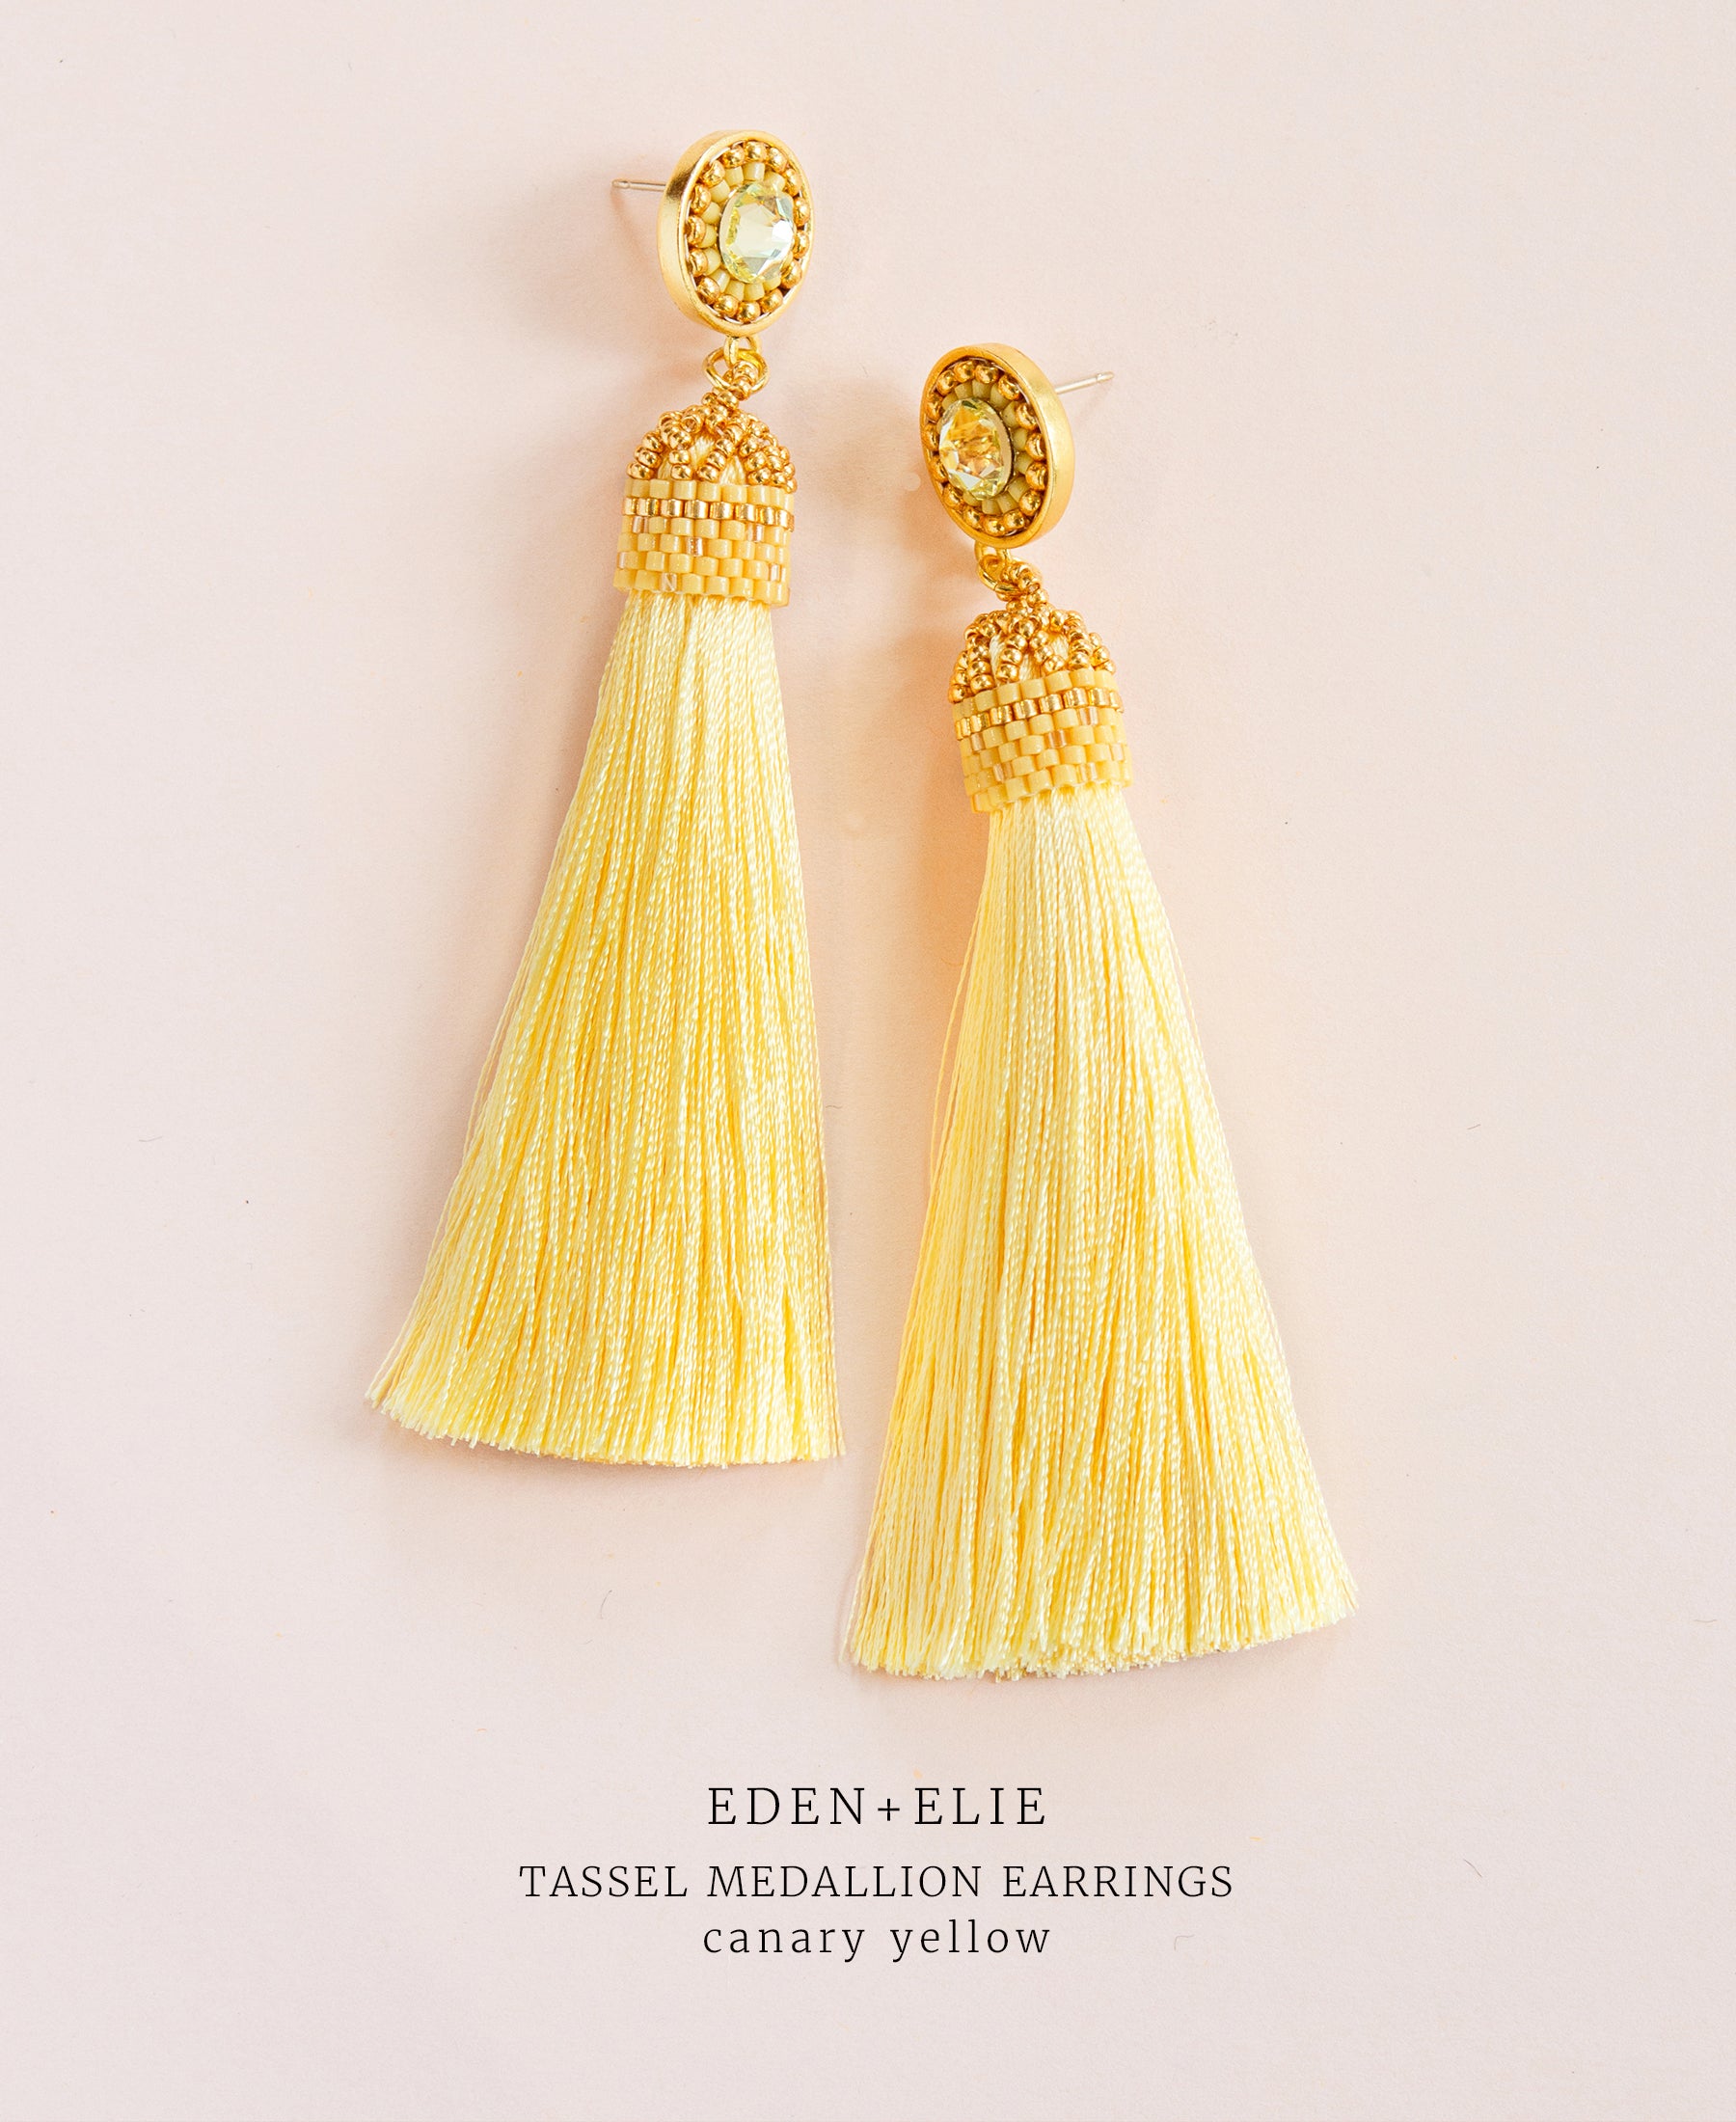 EDEN + ELIE silk tassel statement earrings - canary yellow